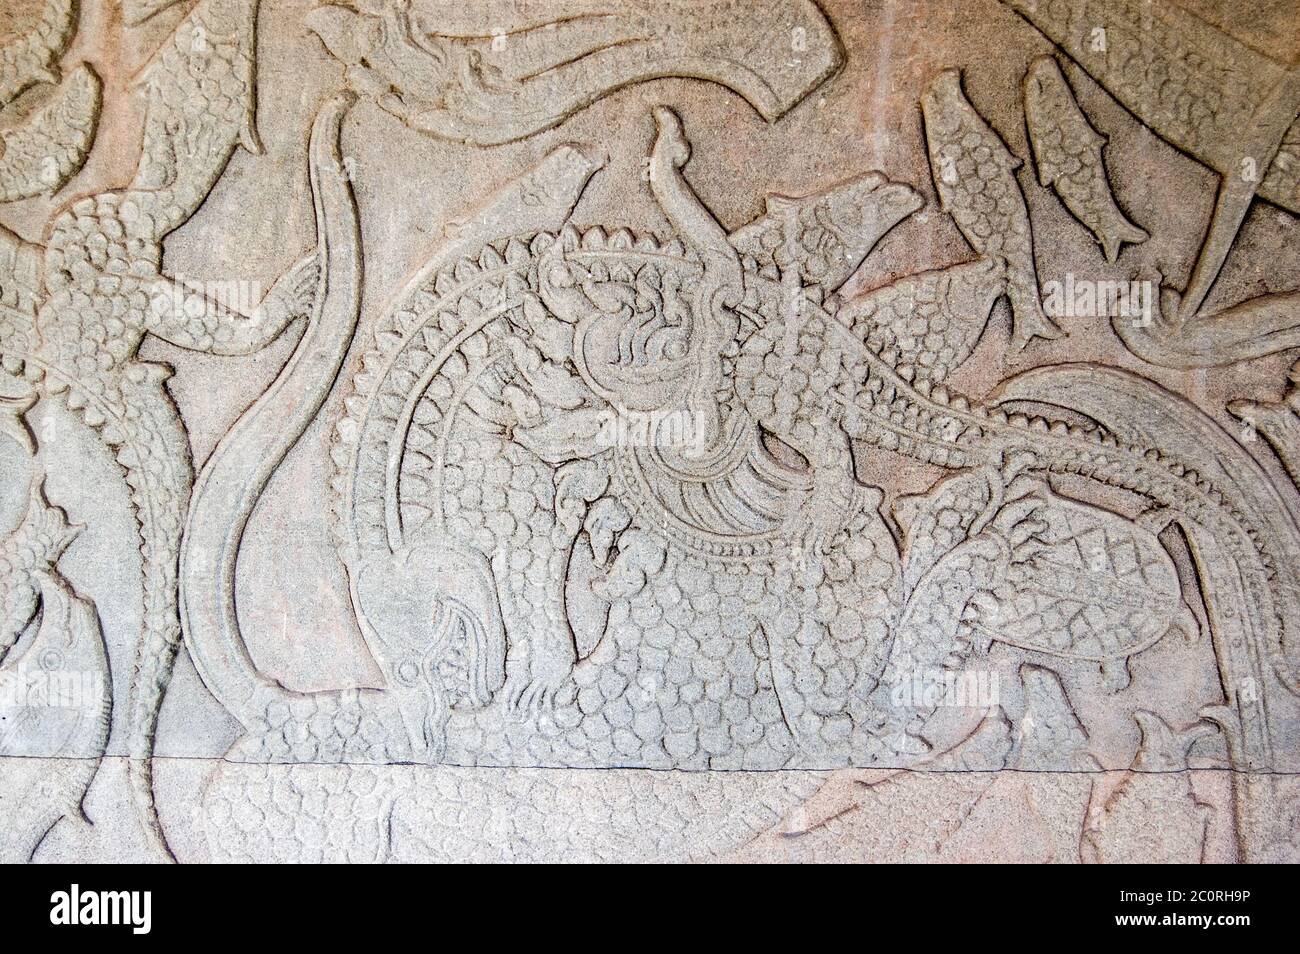 Kymer antique sculpture de la création du monde avec dieu combattant les démons UN Lion chinois combat un crocodile. L'écornage de l'océan de la Galle de lait Banque D'Images